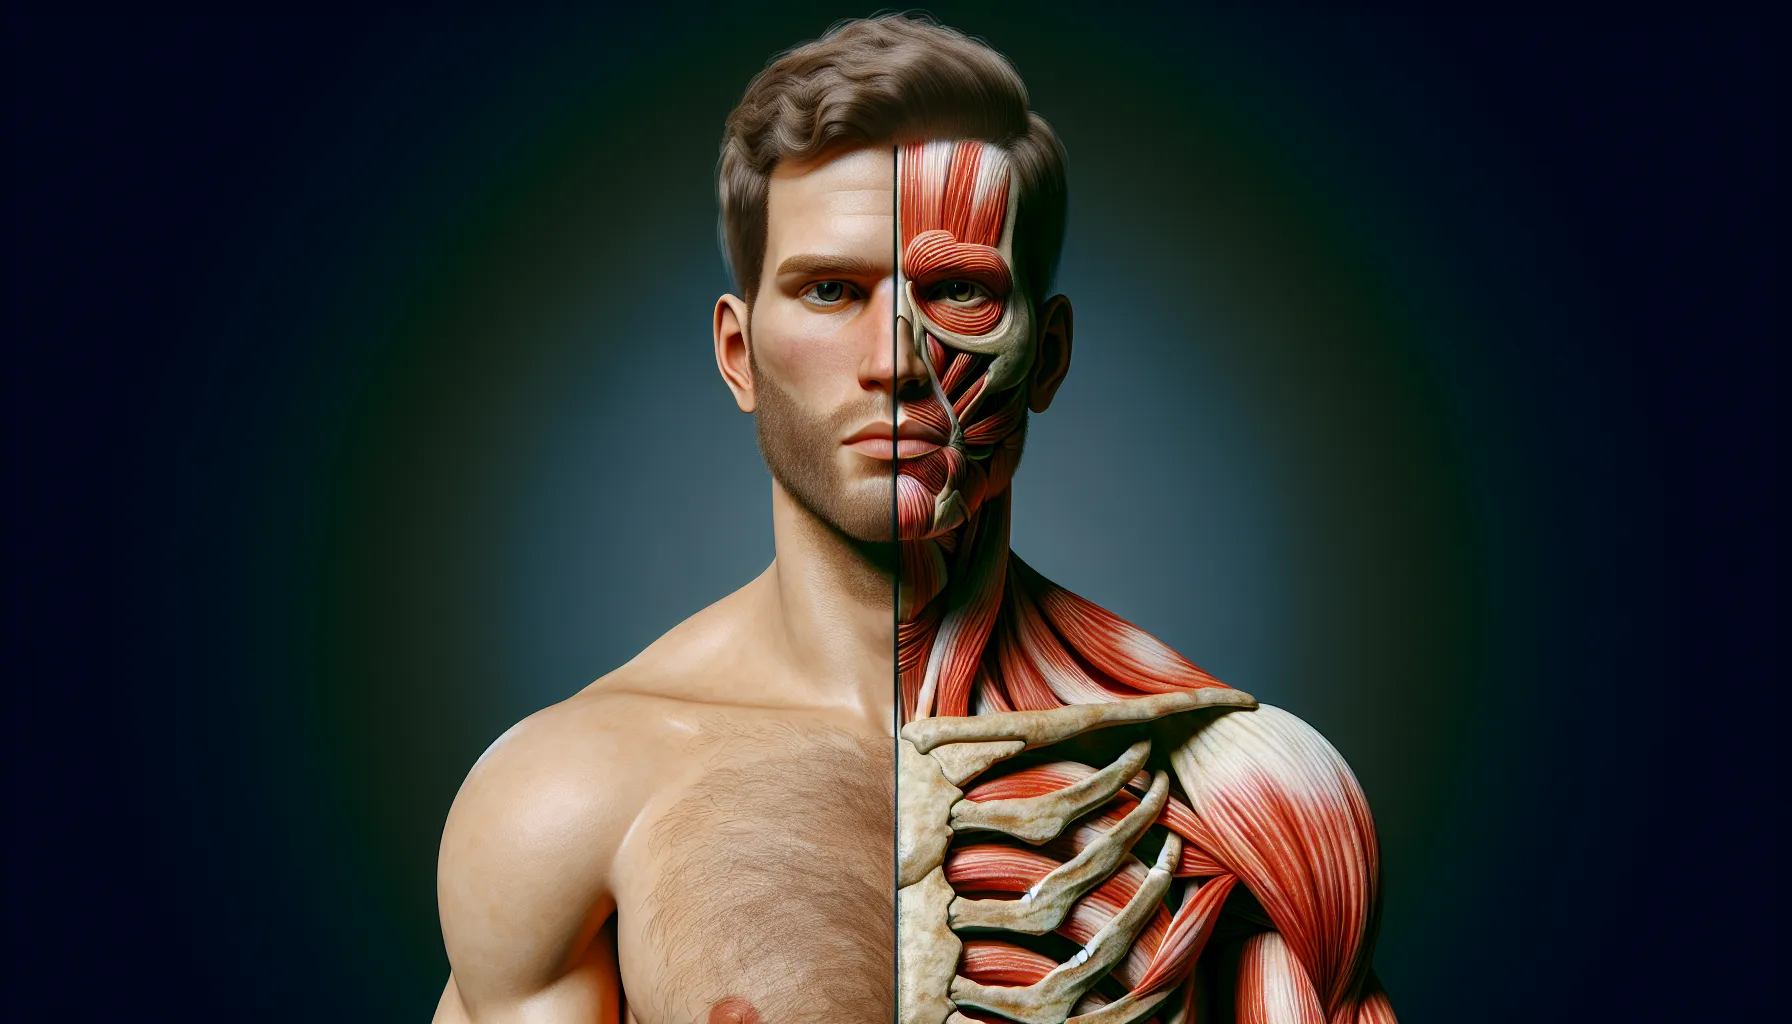 Imagen de un hombre con una mitad del cuerpo formada por carne y la otra mitad por huesos, representando la dualidad de un cristiano carnal y cómo superar esa condición.